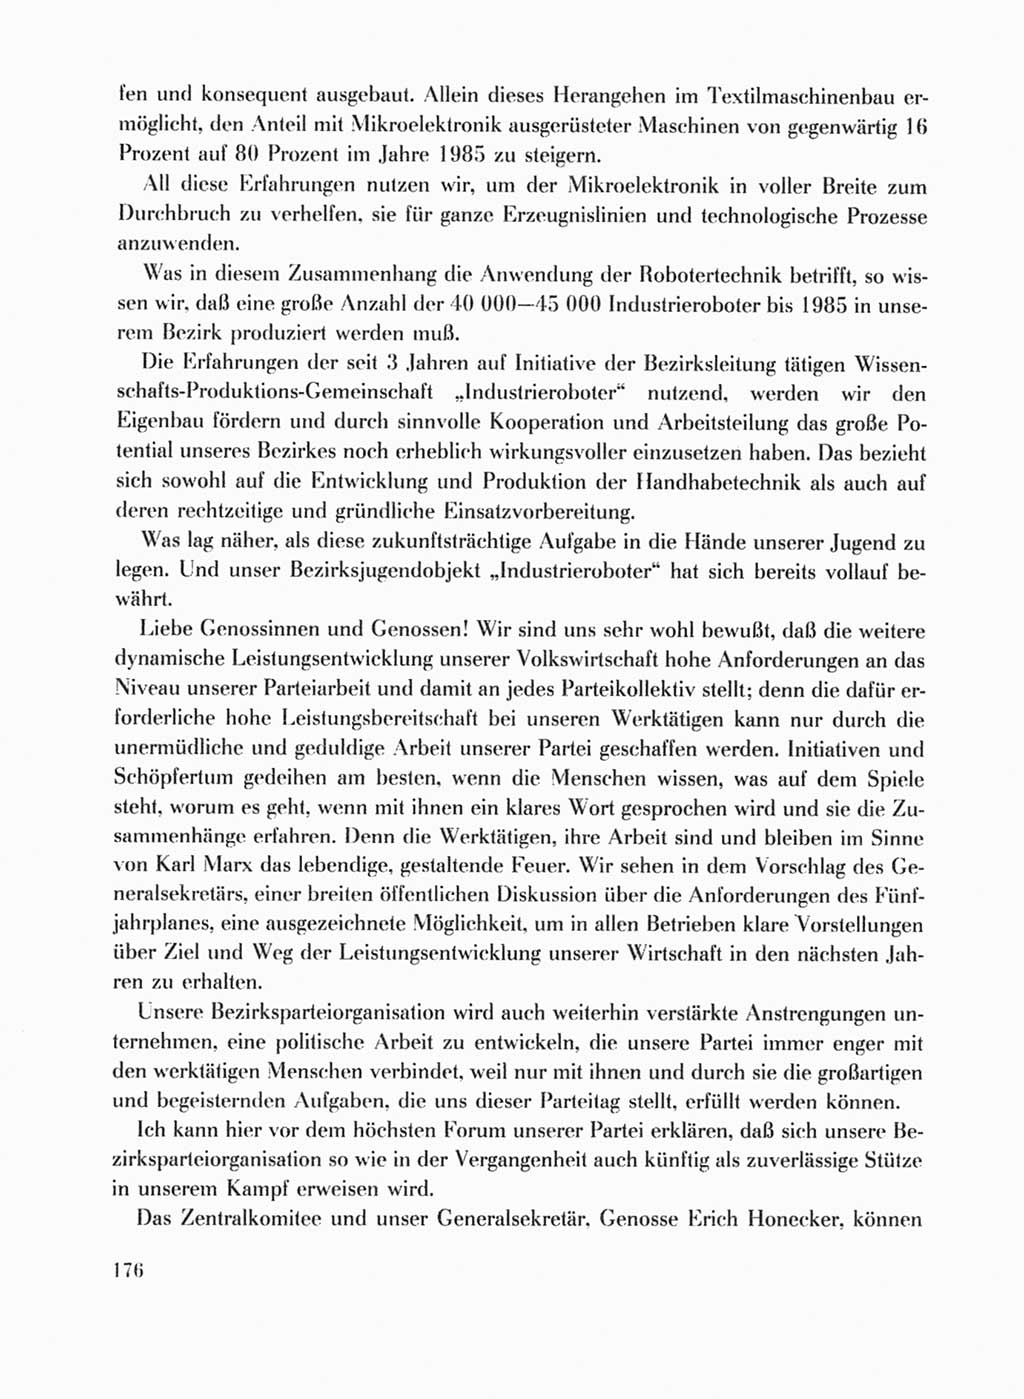 Protokoll der Verhandlungen des Ⅹ. Parteitages der Sozialistischen Einheitspartei Deutschlands (SED) [Deutsche Demokratische Republik (DDR)] 1981, Band 1, Seite 176 (Prot. Verh. Ⅹ. PT SED DDR 1981, Bd. 1, S. 176)